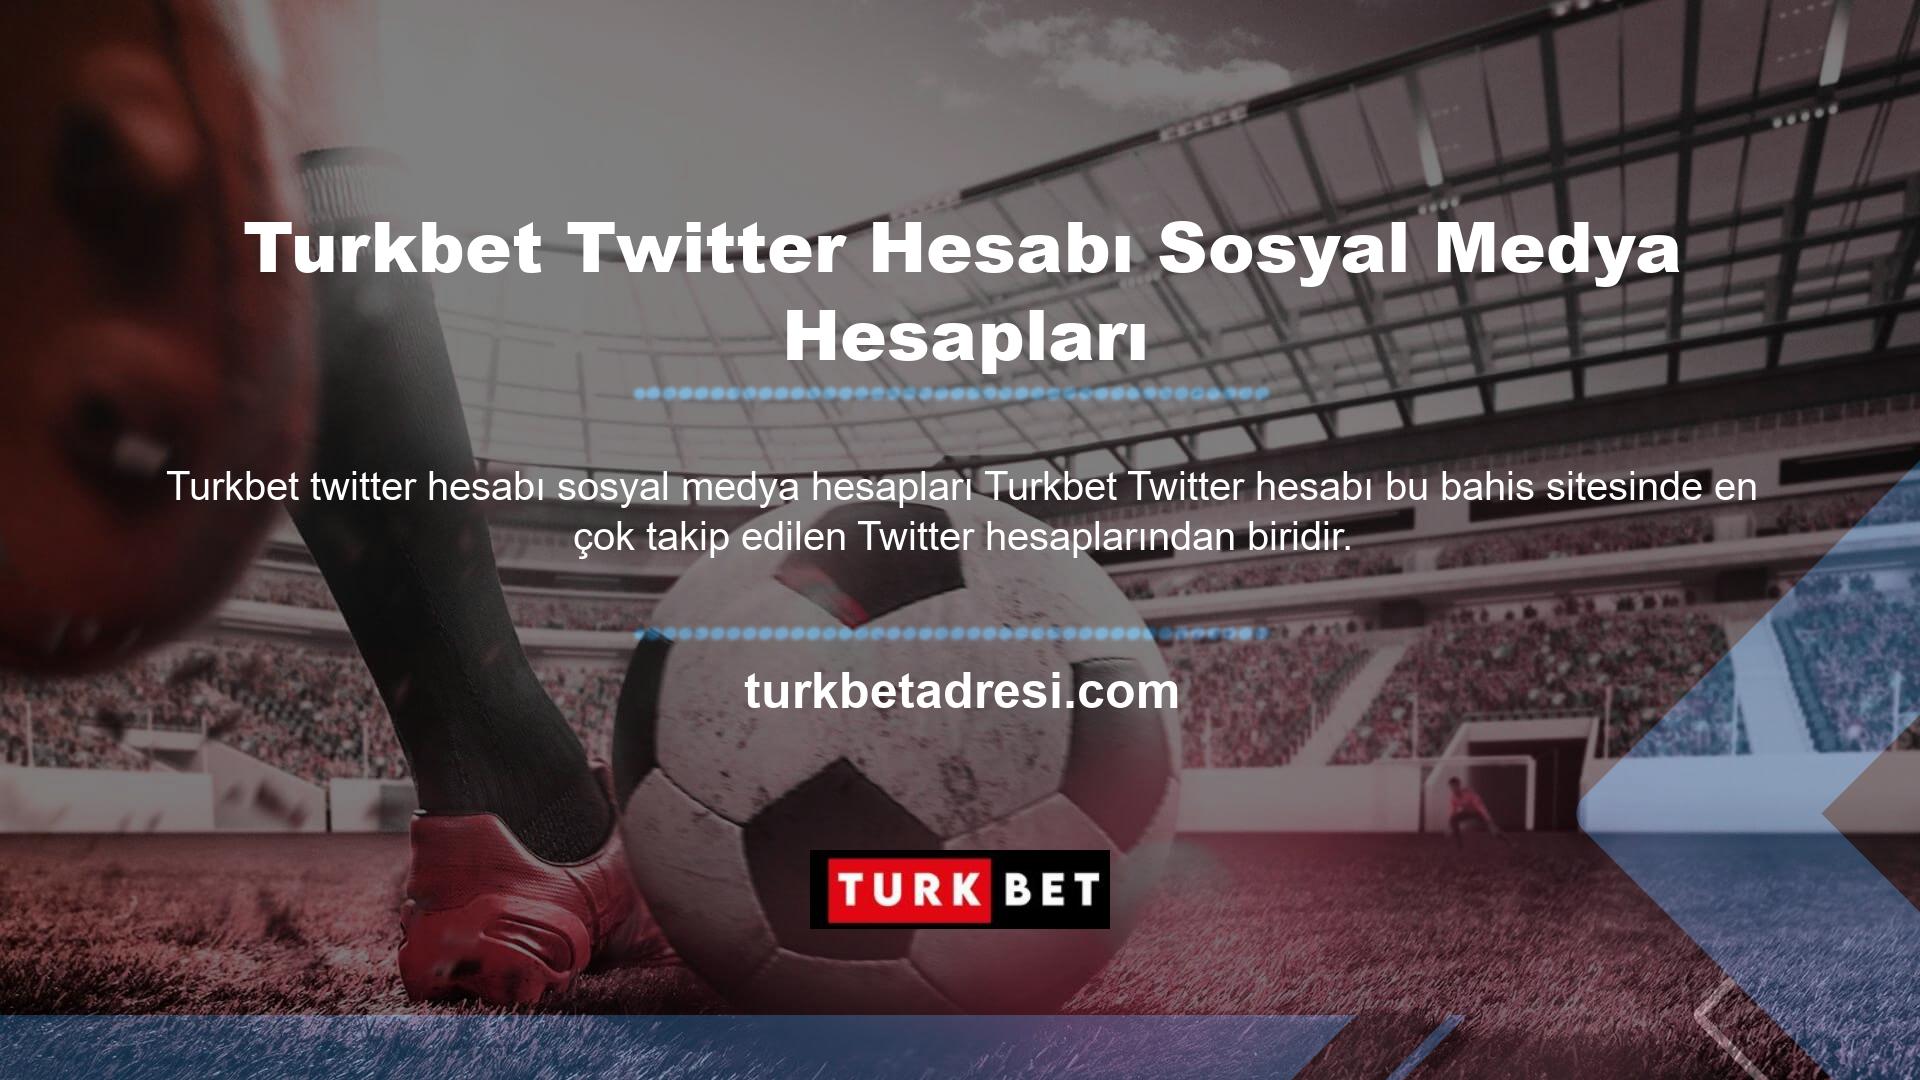 Bu web sitesinin Twitter hesabı, hem takipçi sayısı hem de paylaşılan etkileşimler açısından binlerce Turkbet Twitter hesabı ve sosyal medya hesabından oluşan çok çeşitli bir hedef kitleye ulaşmaktadır